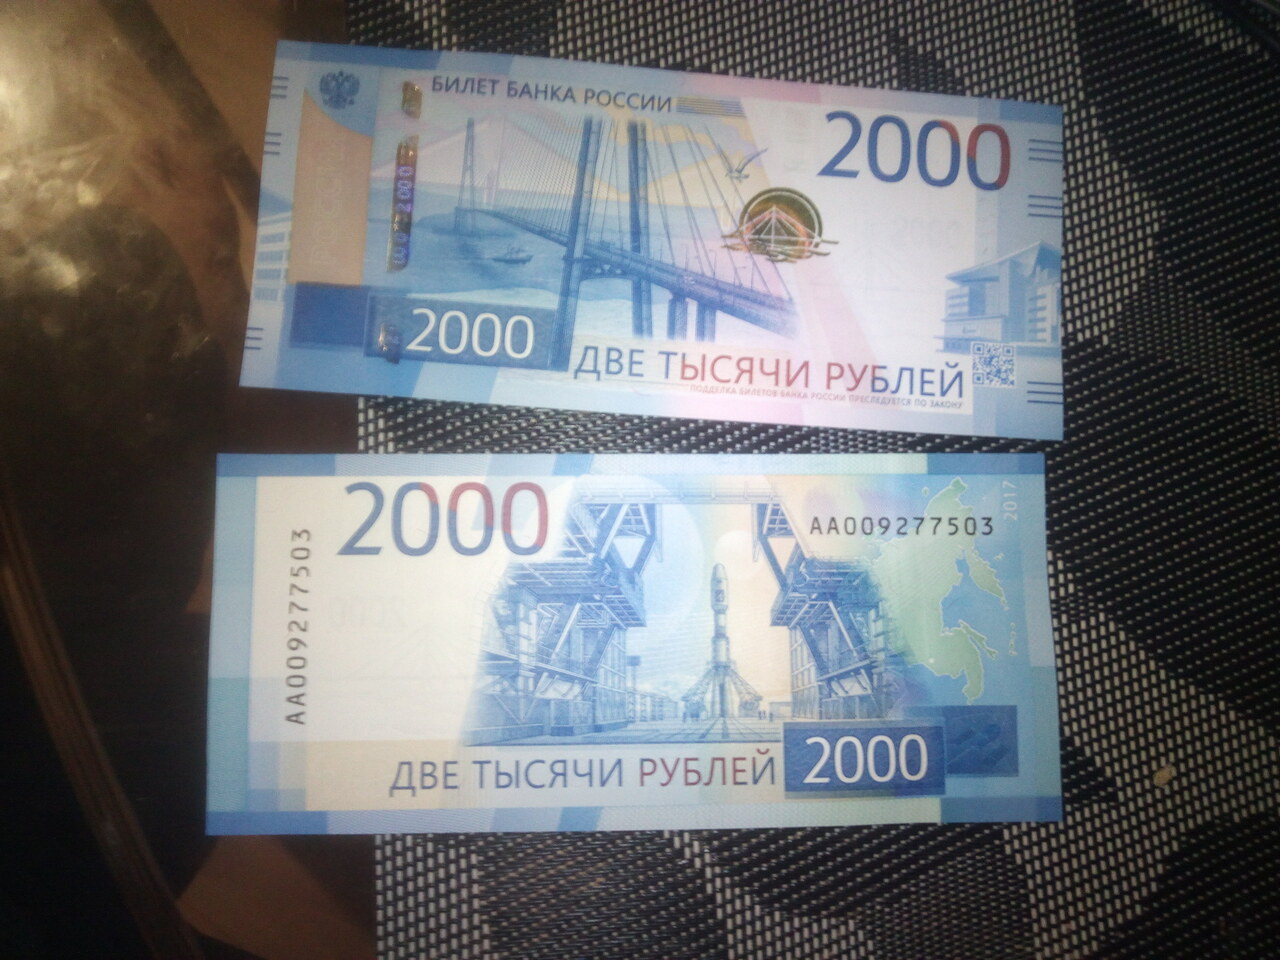 3к рублей. Купюра 2000 рублей. 1000 И 2000 рублей. Две тысячи рублей купюра. Банкнота 2000 руб.